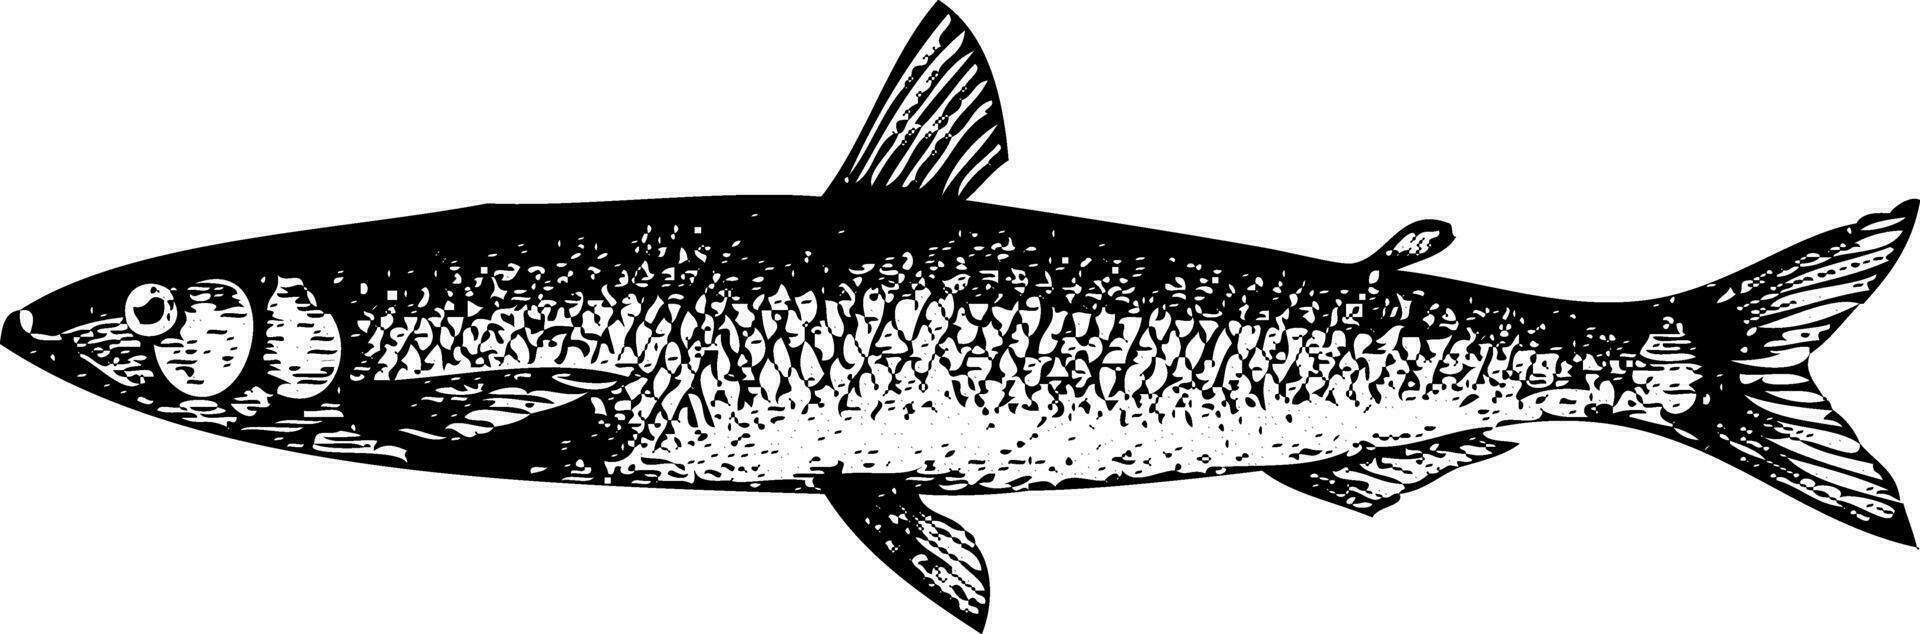 antiguo grabado de un europeo eperlano pescado o ósmero eperlanus vector